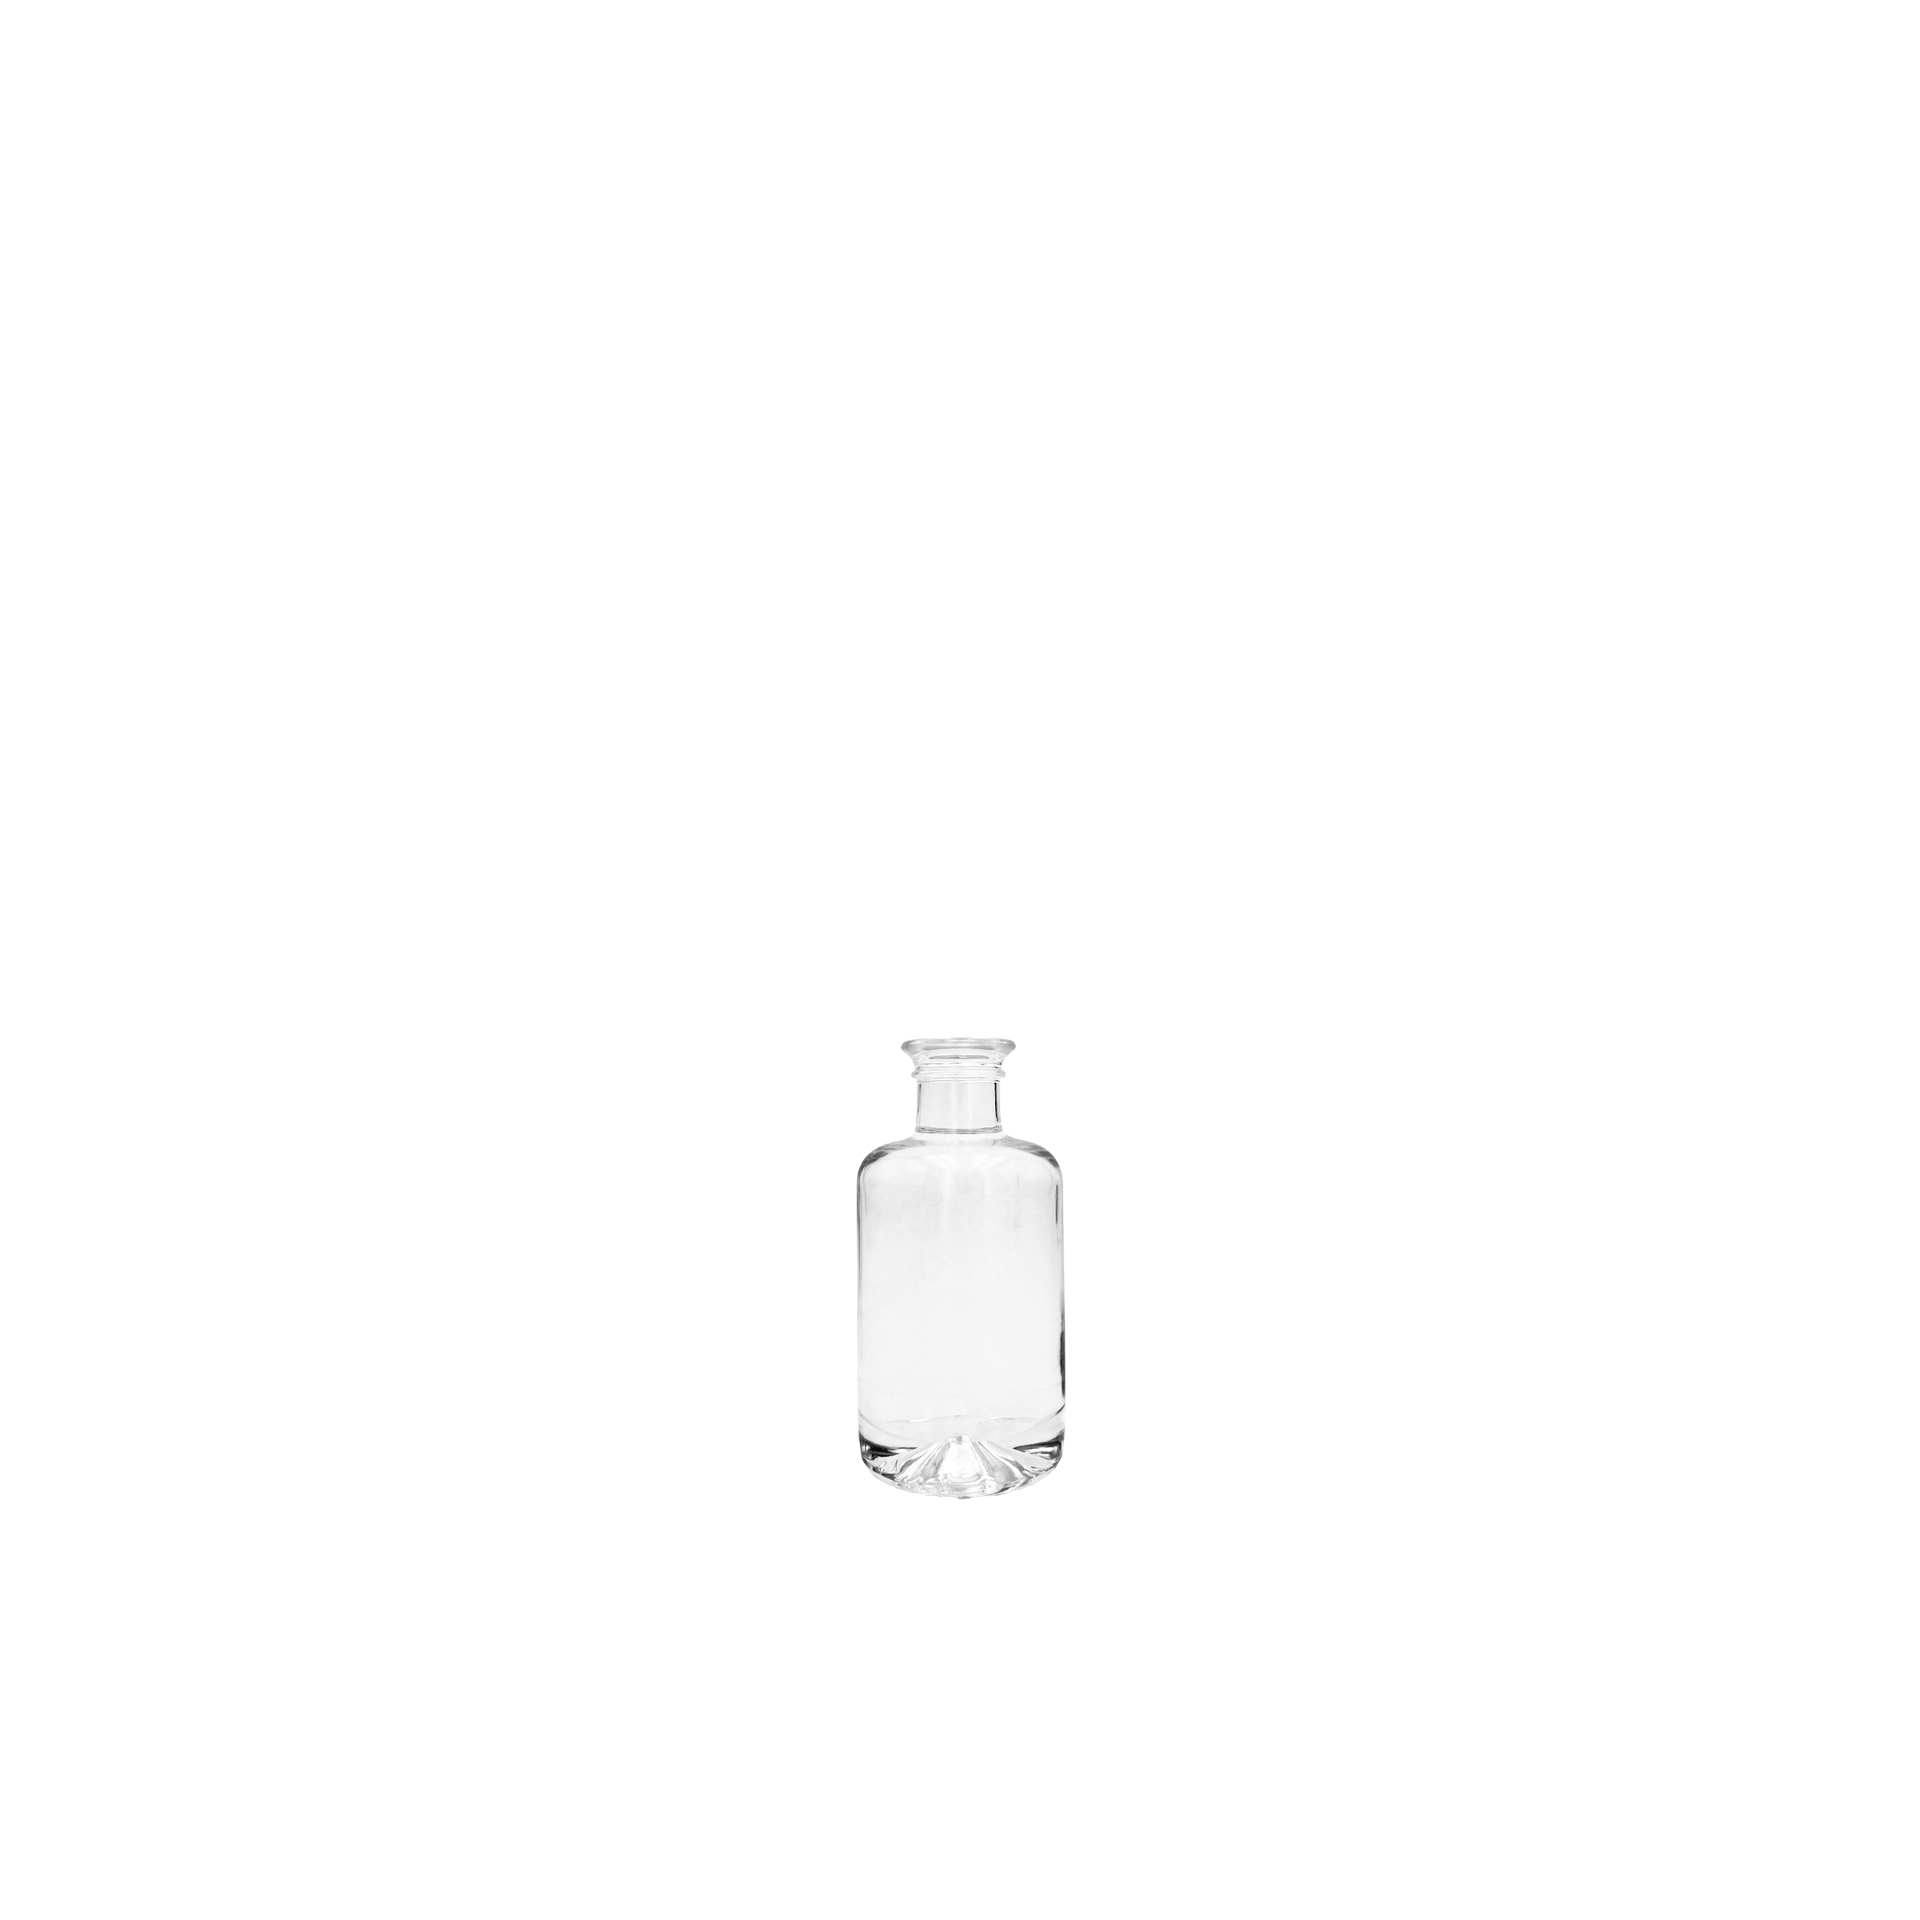 Apothekerflasche 0,1 Liter, weiß (OHNE VERSCHLUSS)